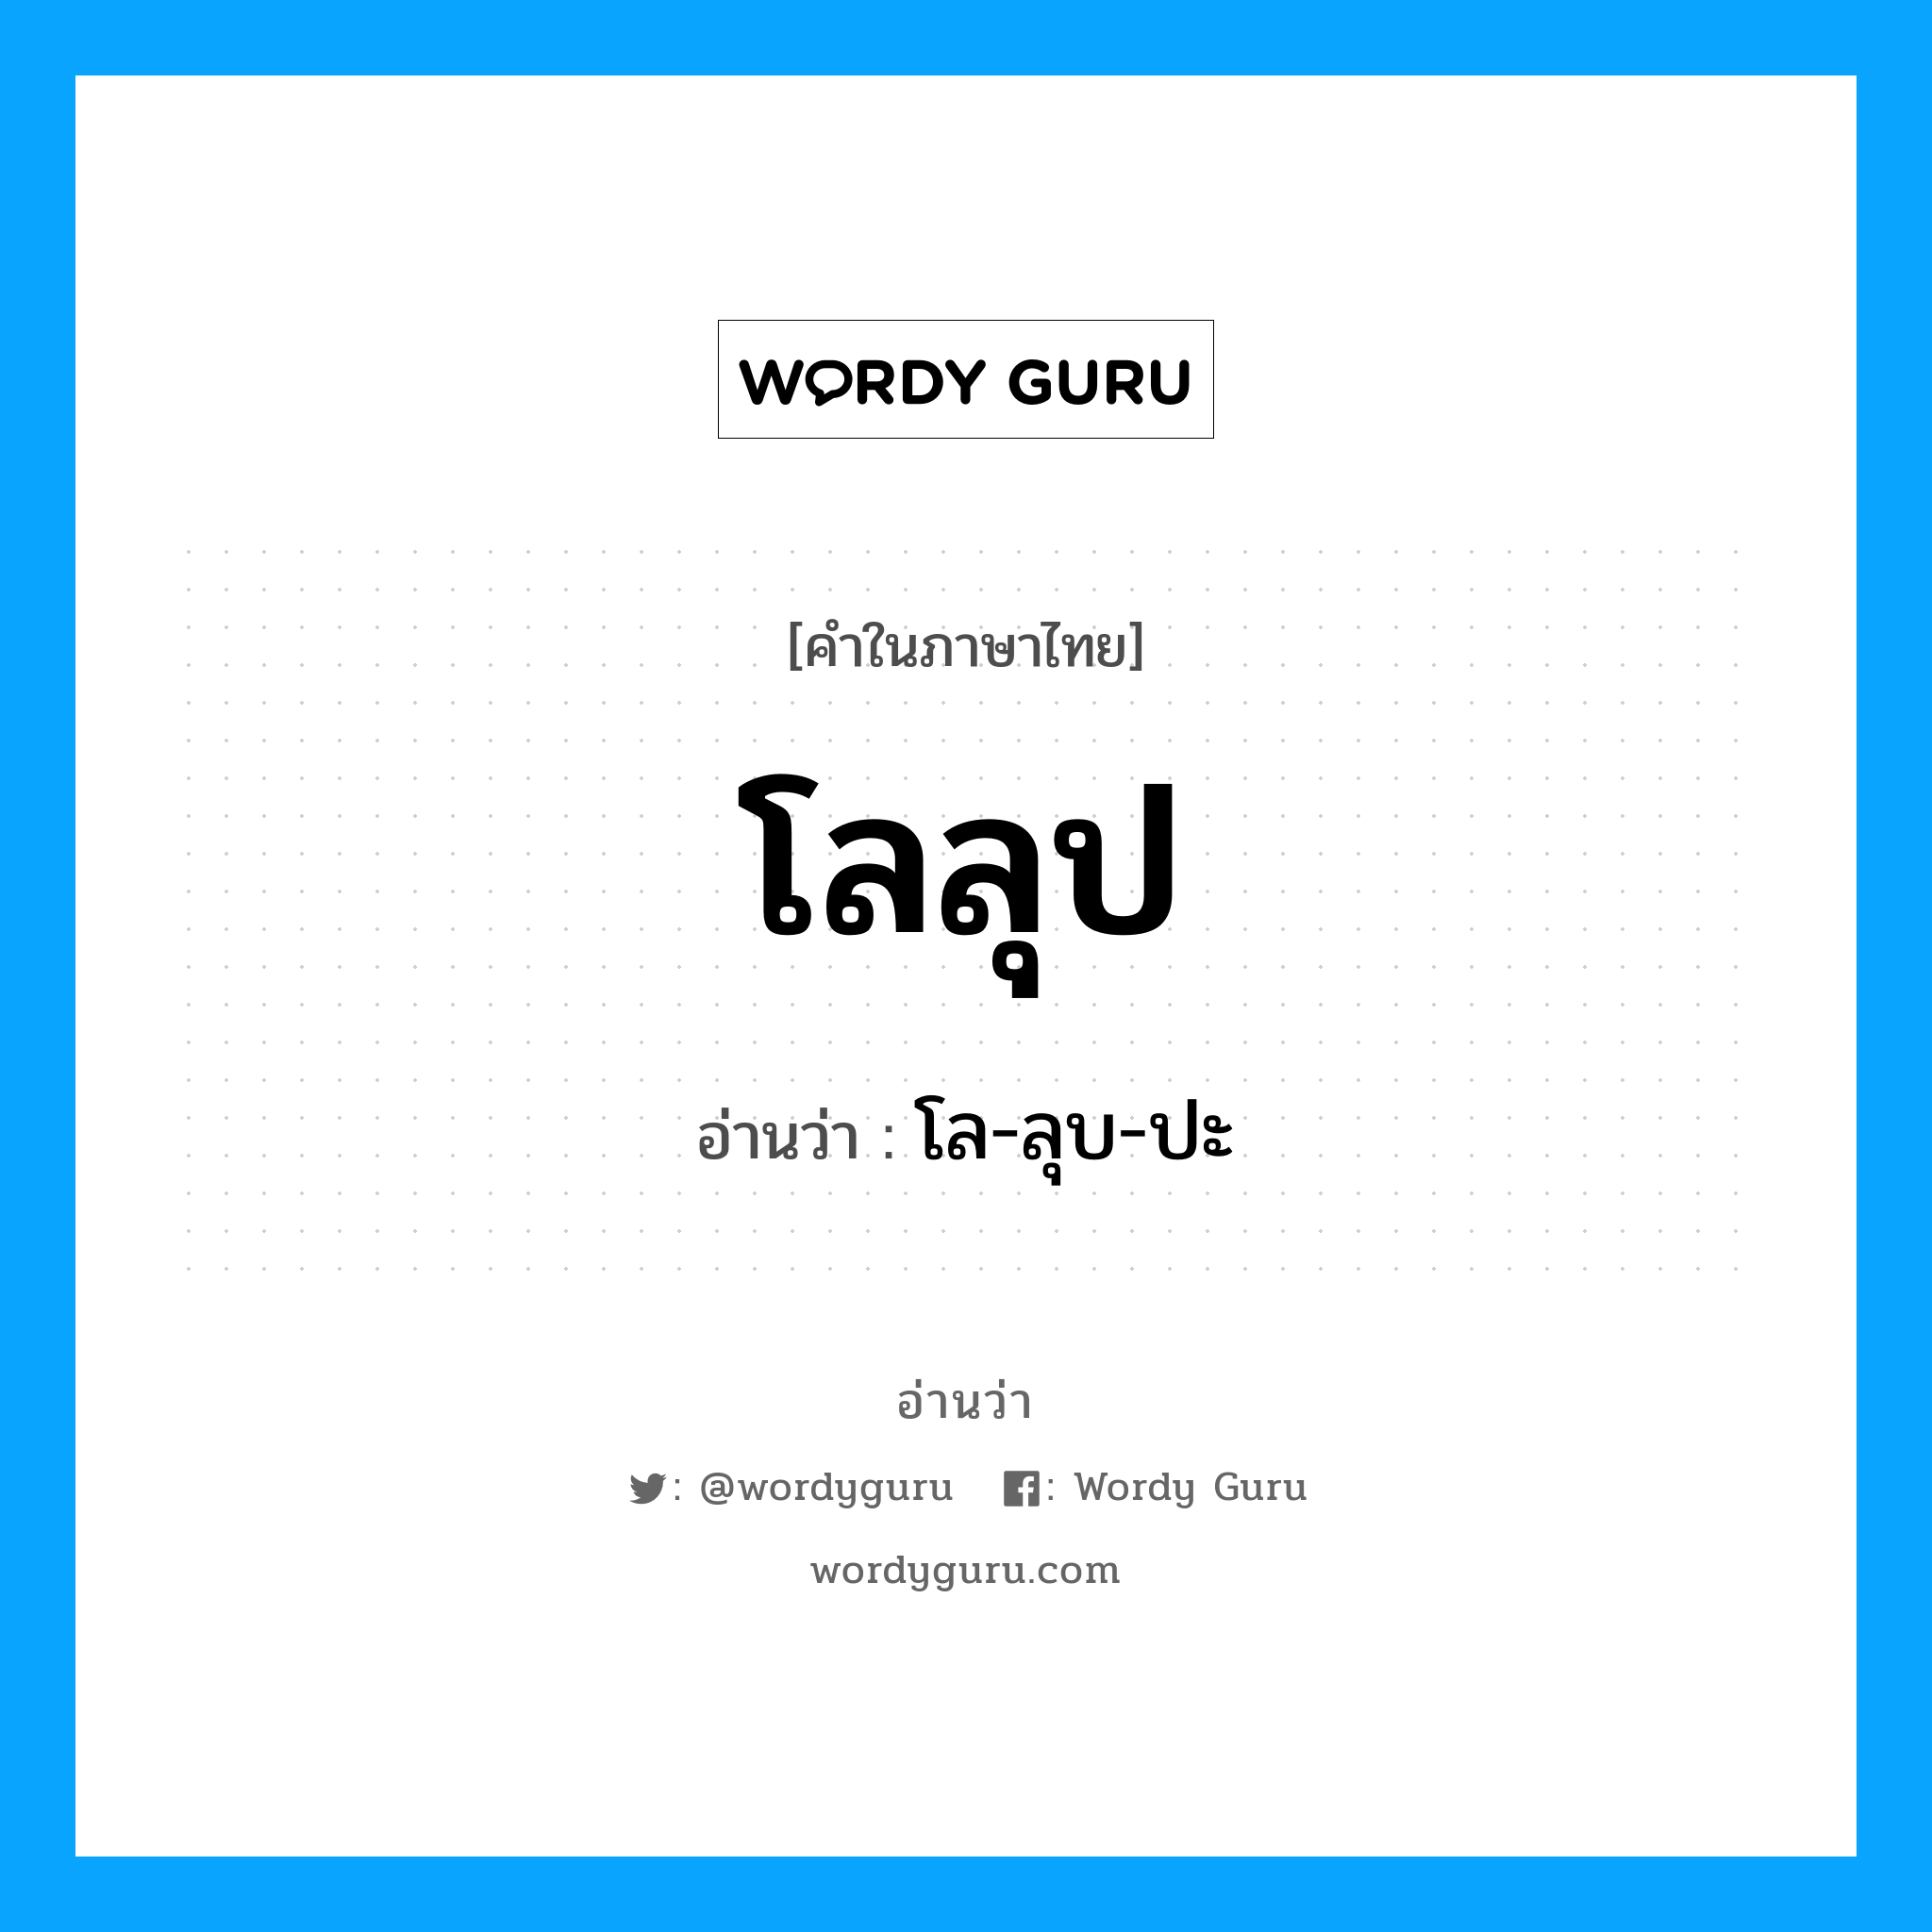 โล-ลุบ-ปะ เป็นคำอ่านของคำไหน?, คำในภาษาไทย โล-ลุบ-ปะ อ่านว่า โลลุป